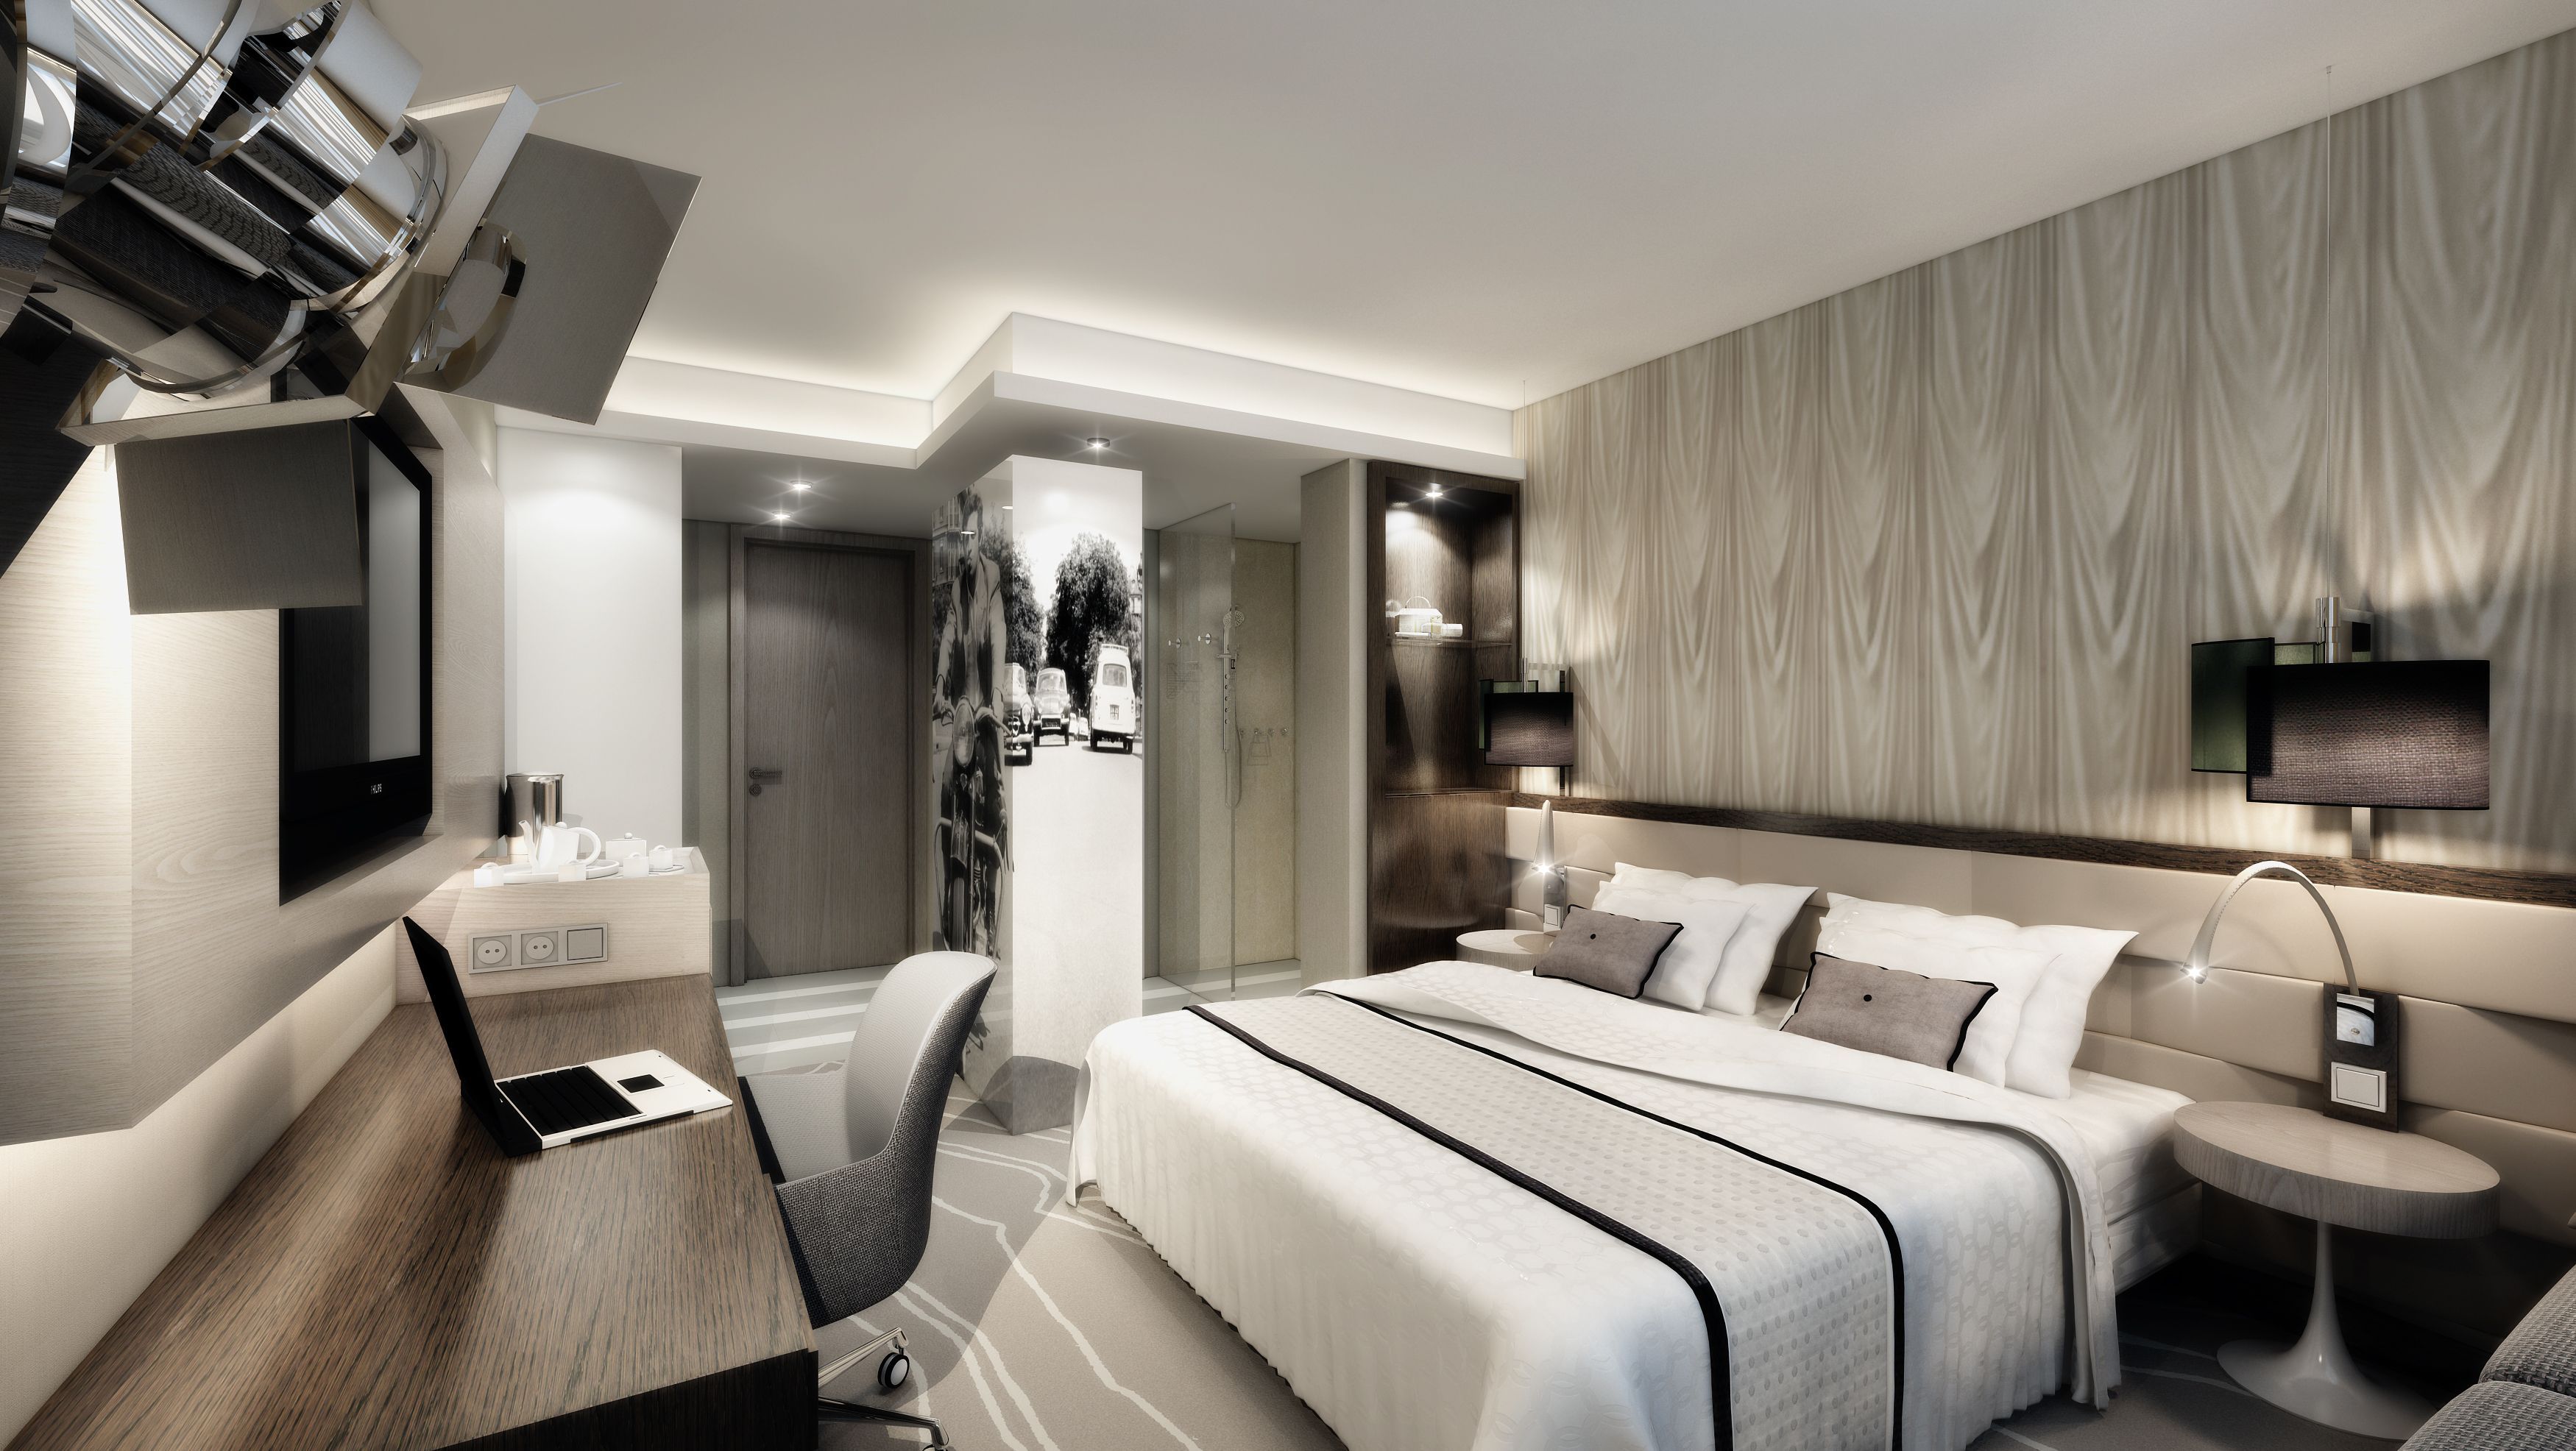 Die Hotelzimmer-Dauerausstellung von JOI-Design wird Anfang 2013 im Hotel-Kompetenz-Zentrum eröffnet